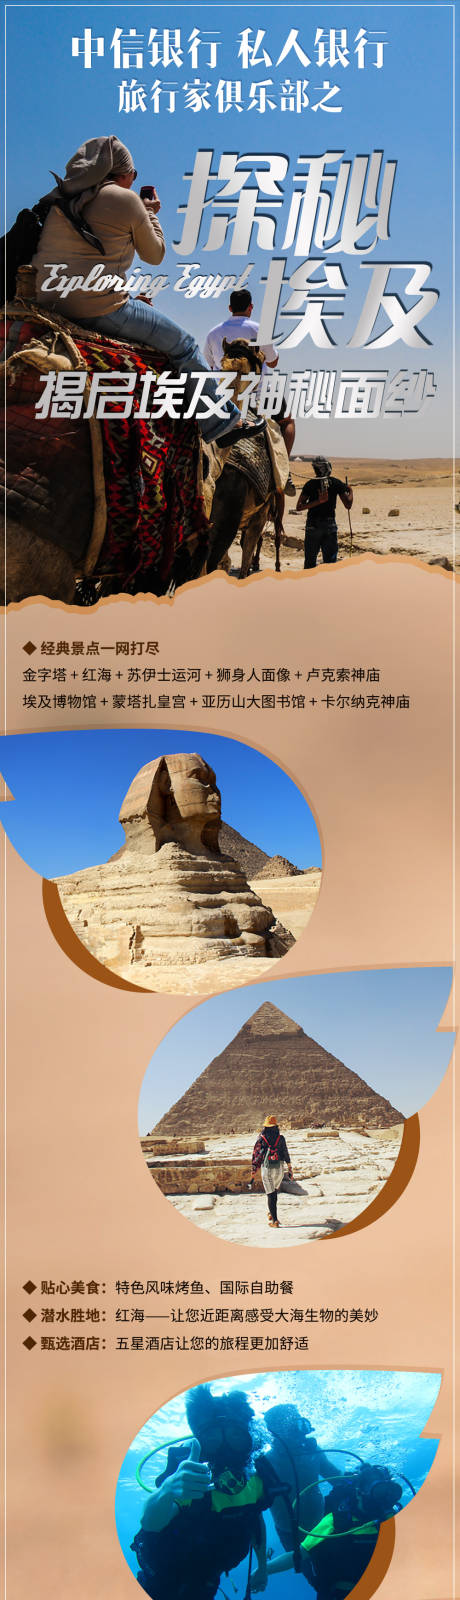 埃及旅行详情页